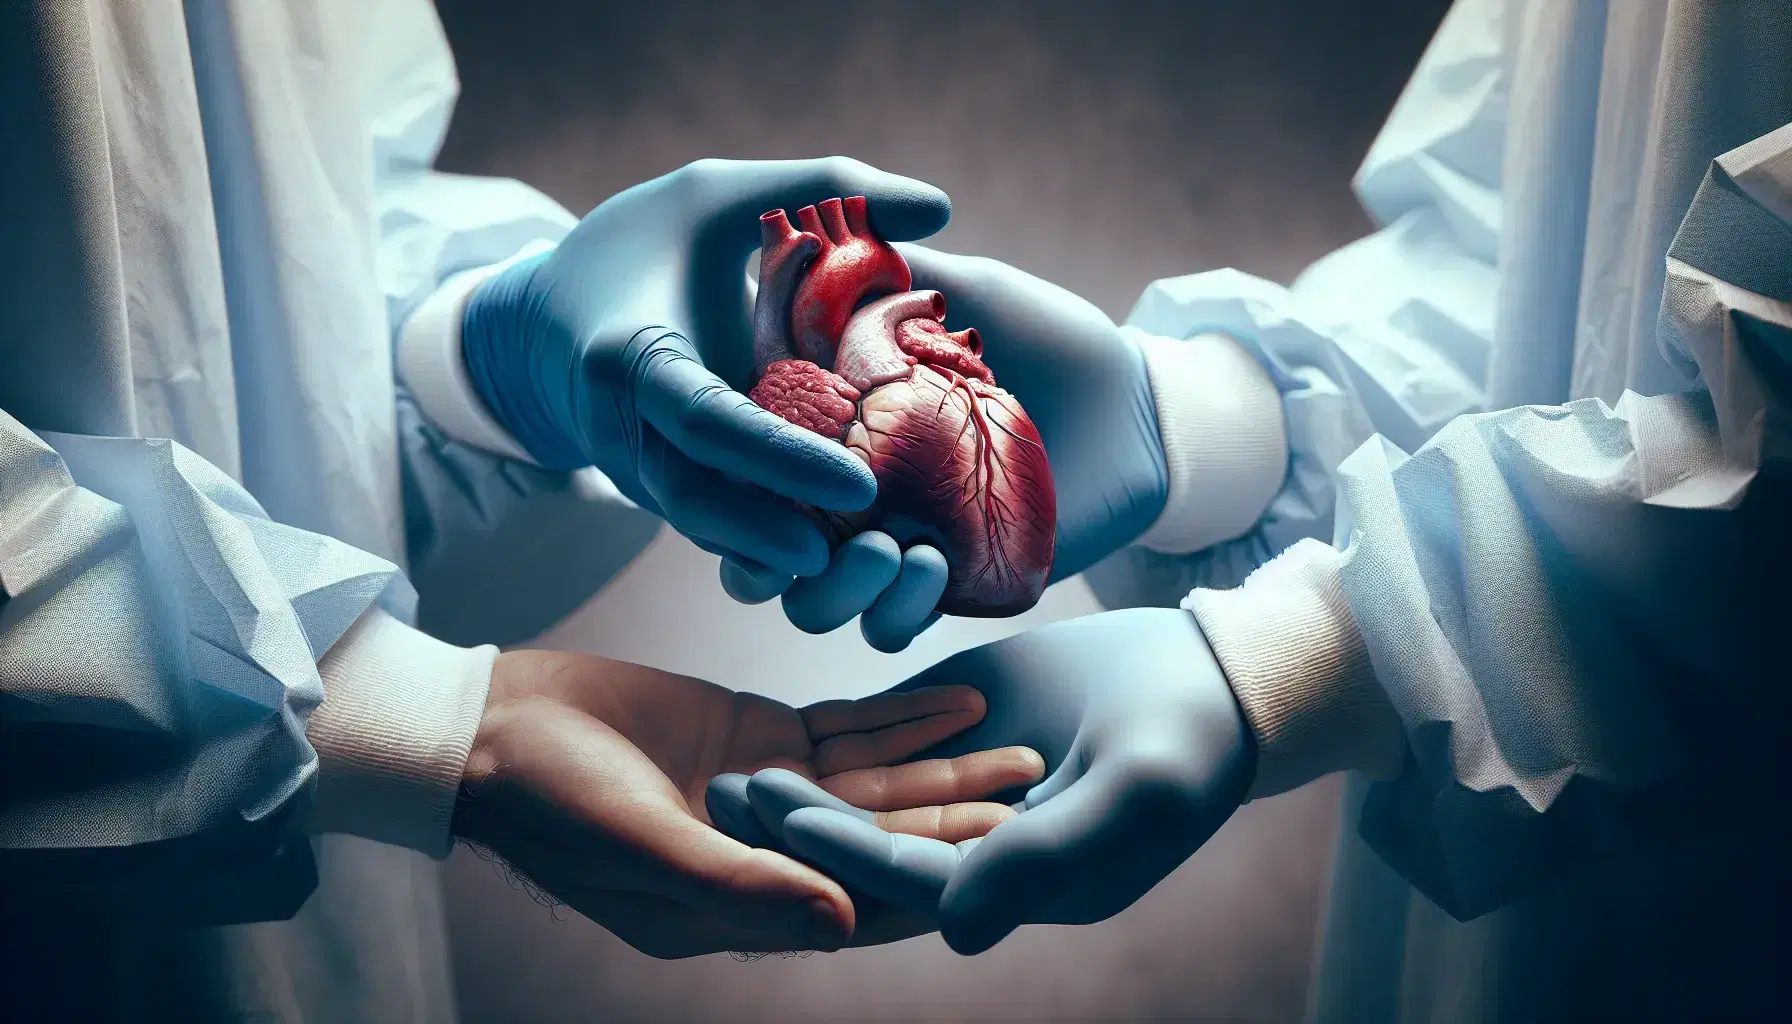 Manos con guantes quirúrgicos azules entregan un corazón humano realista a manos desnudas, destacando detalles de venas y arterias en un fondo suave y desenfocado.